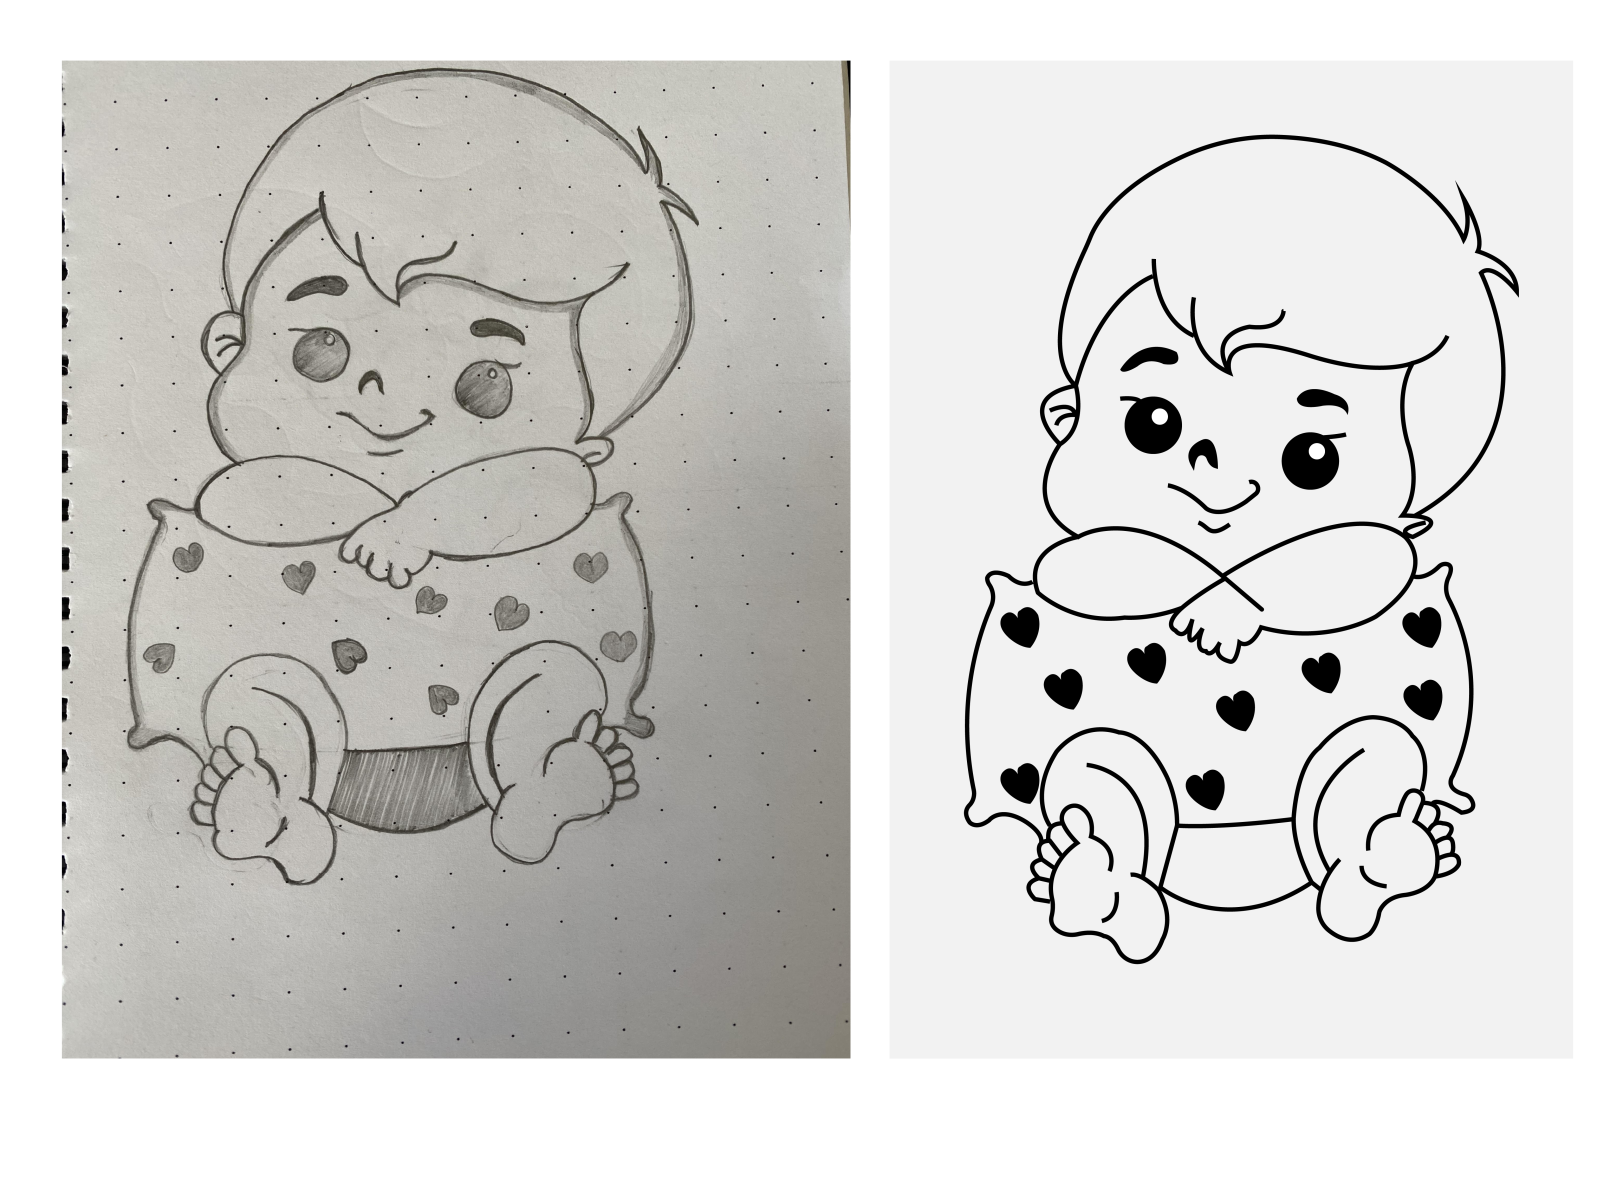 Pencil Sketch Of Cute Baby  DesiPainterscom